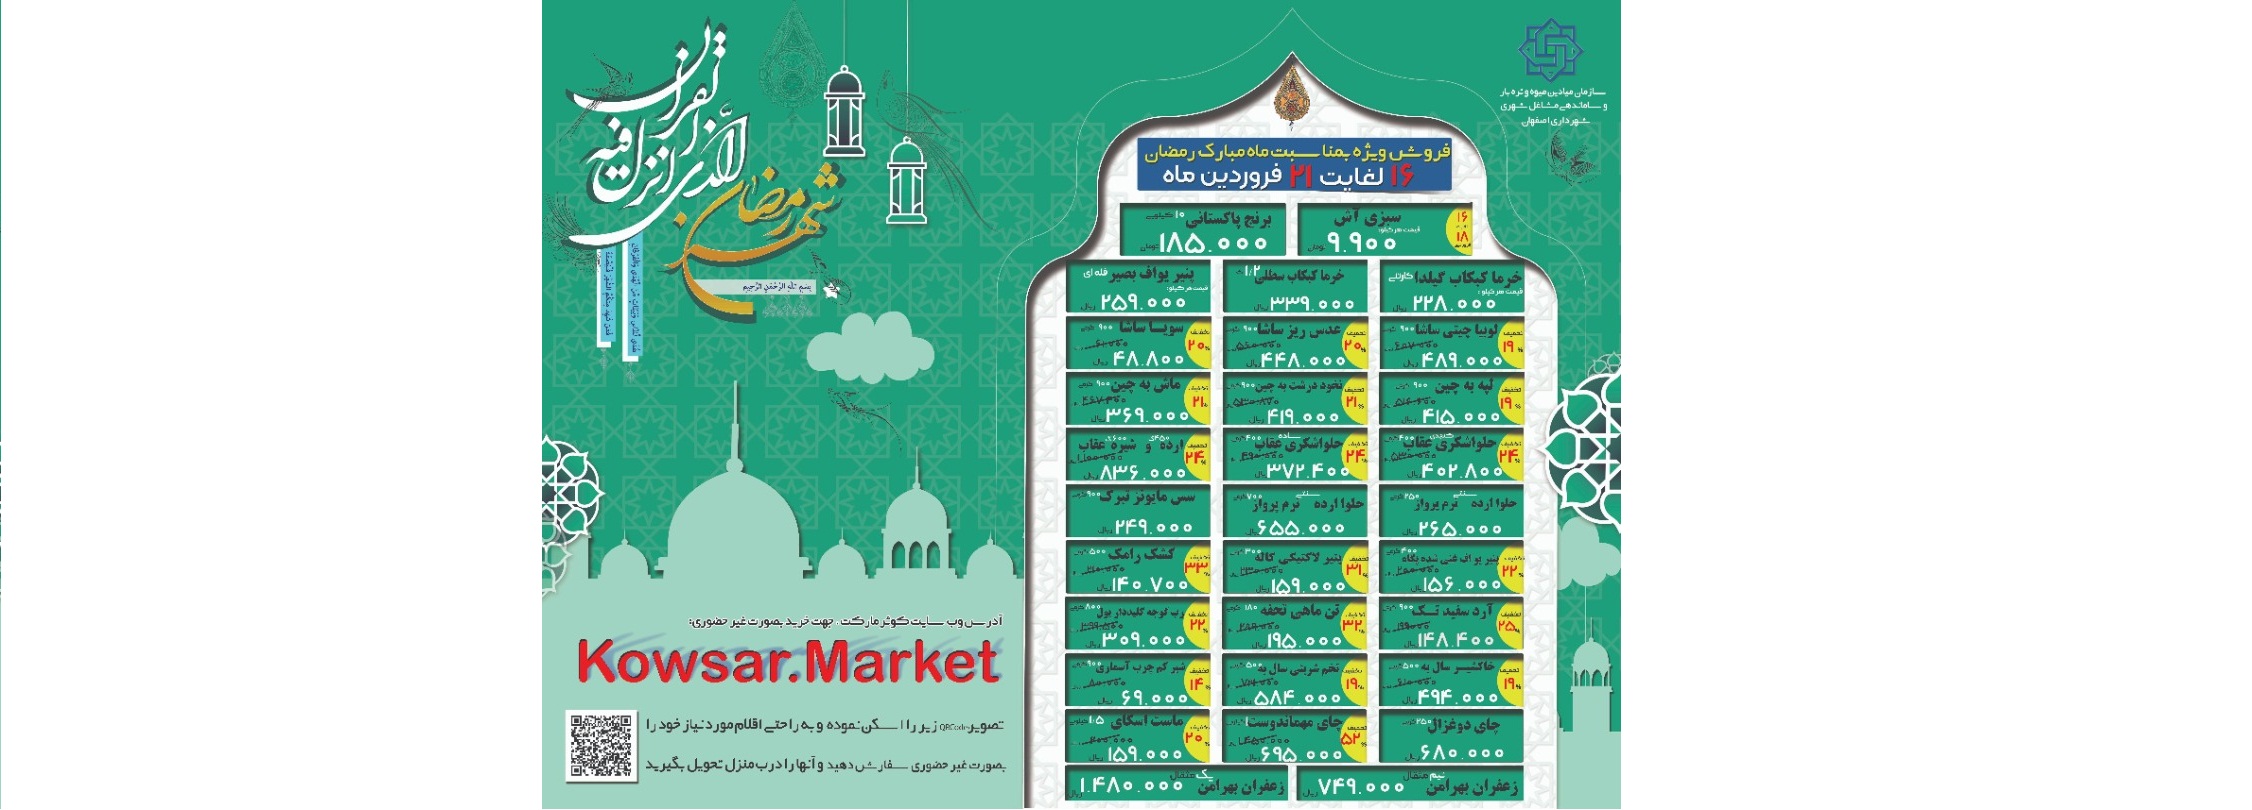 فروش ویژه بازارهای کوثر در ماه رمضان